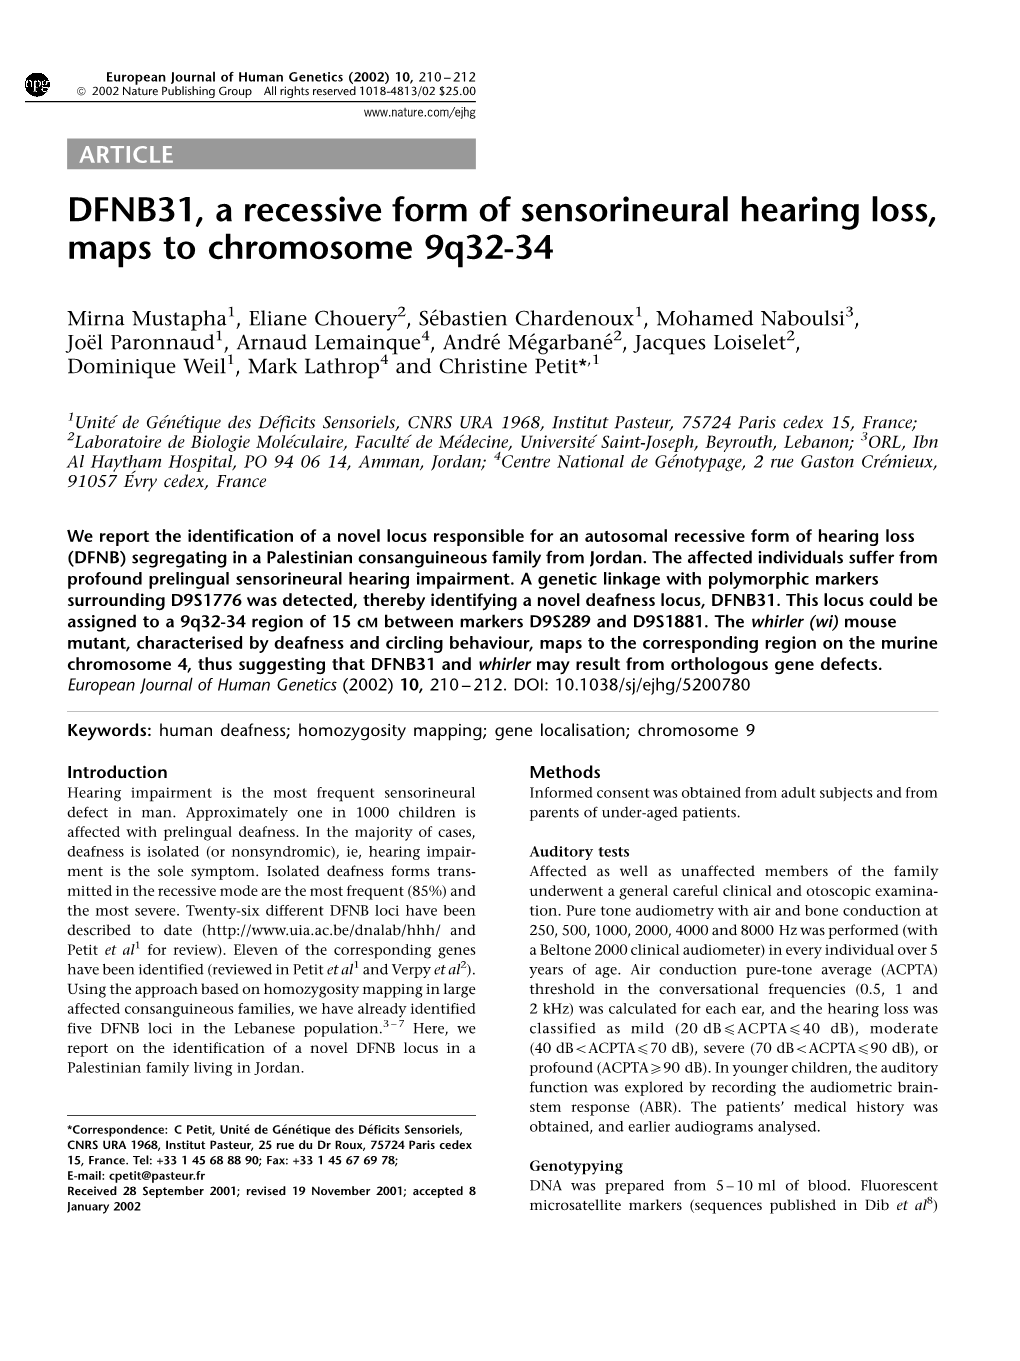 DFNB31, a Recessive Form of Sensorineural Hearing Loss, Maps to Chromosome 9Q32-34